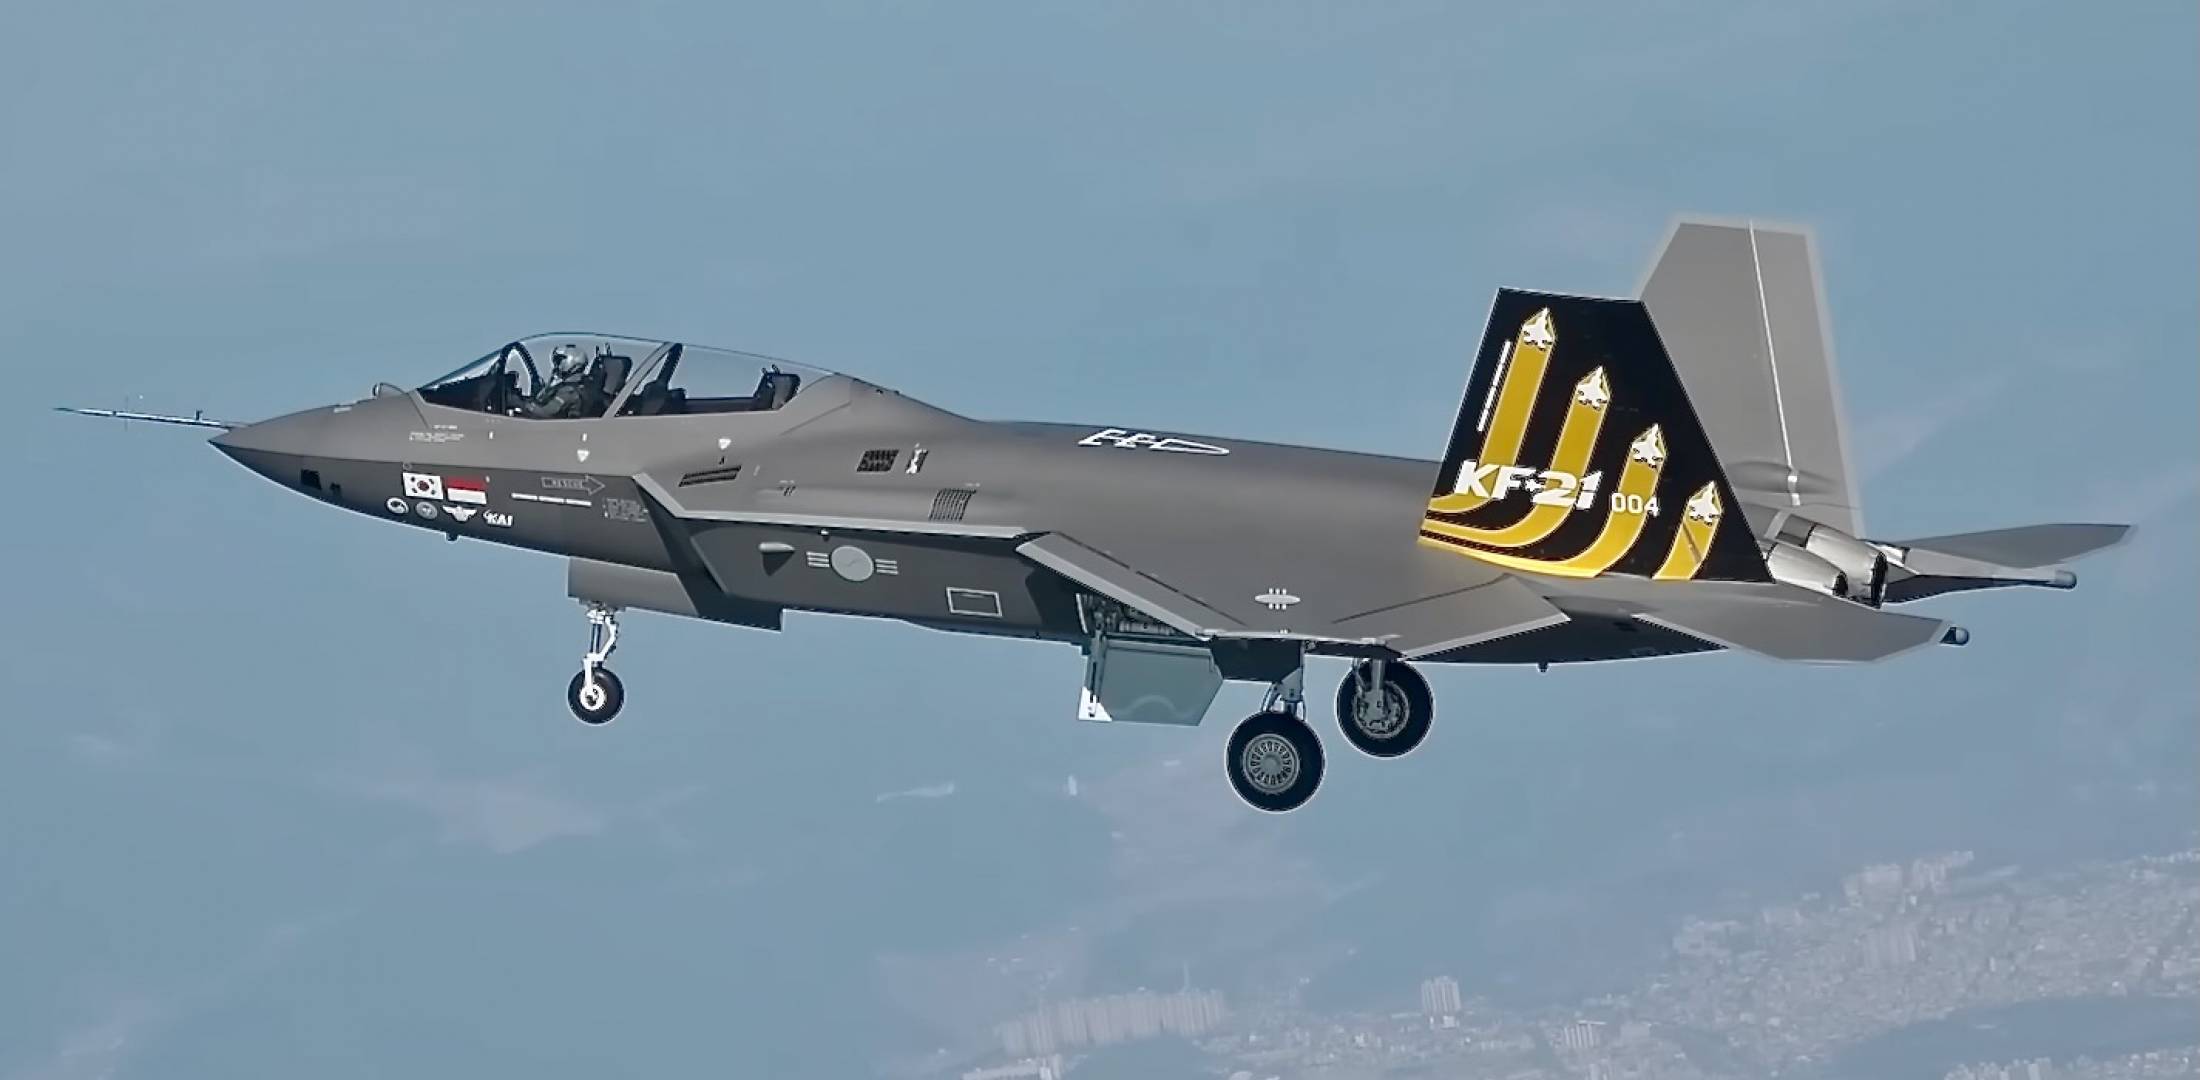 KF-21-Kampfflugzeug besteht erfolgreich die vorläufige Einsatzfähigkeitsprüfung